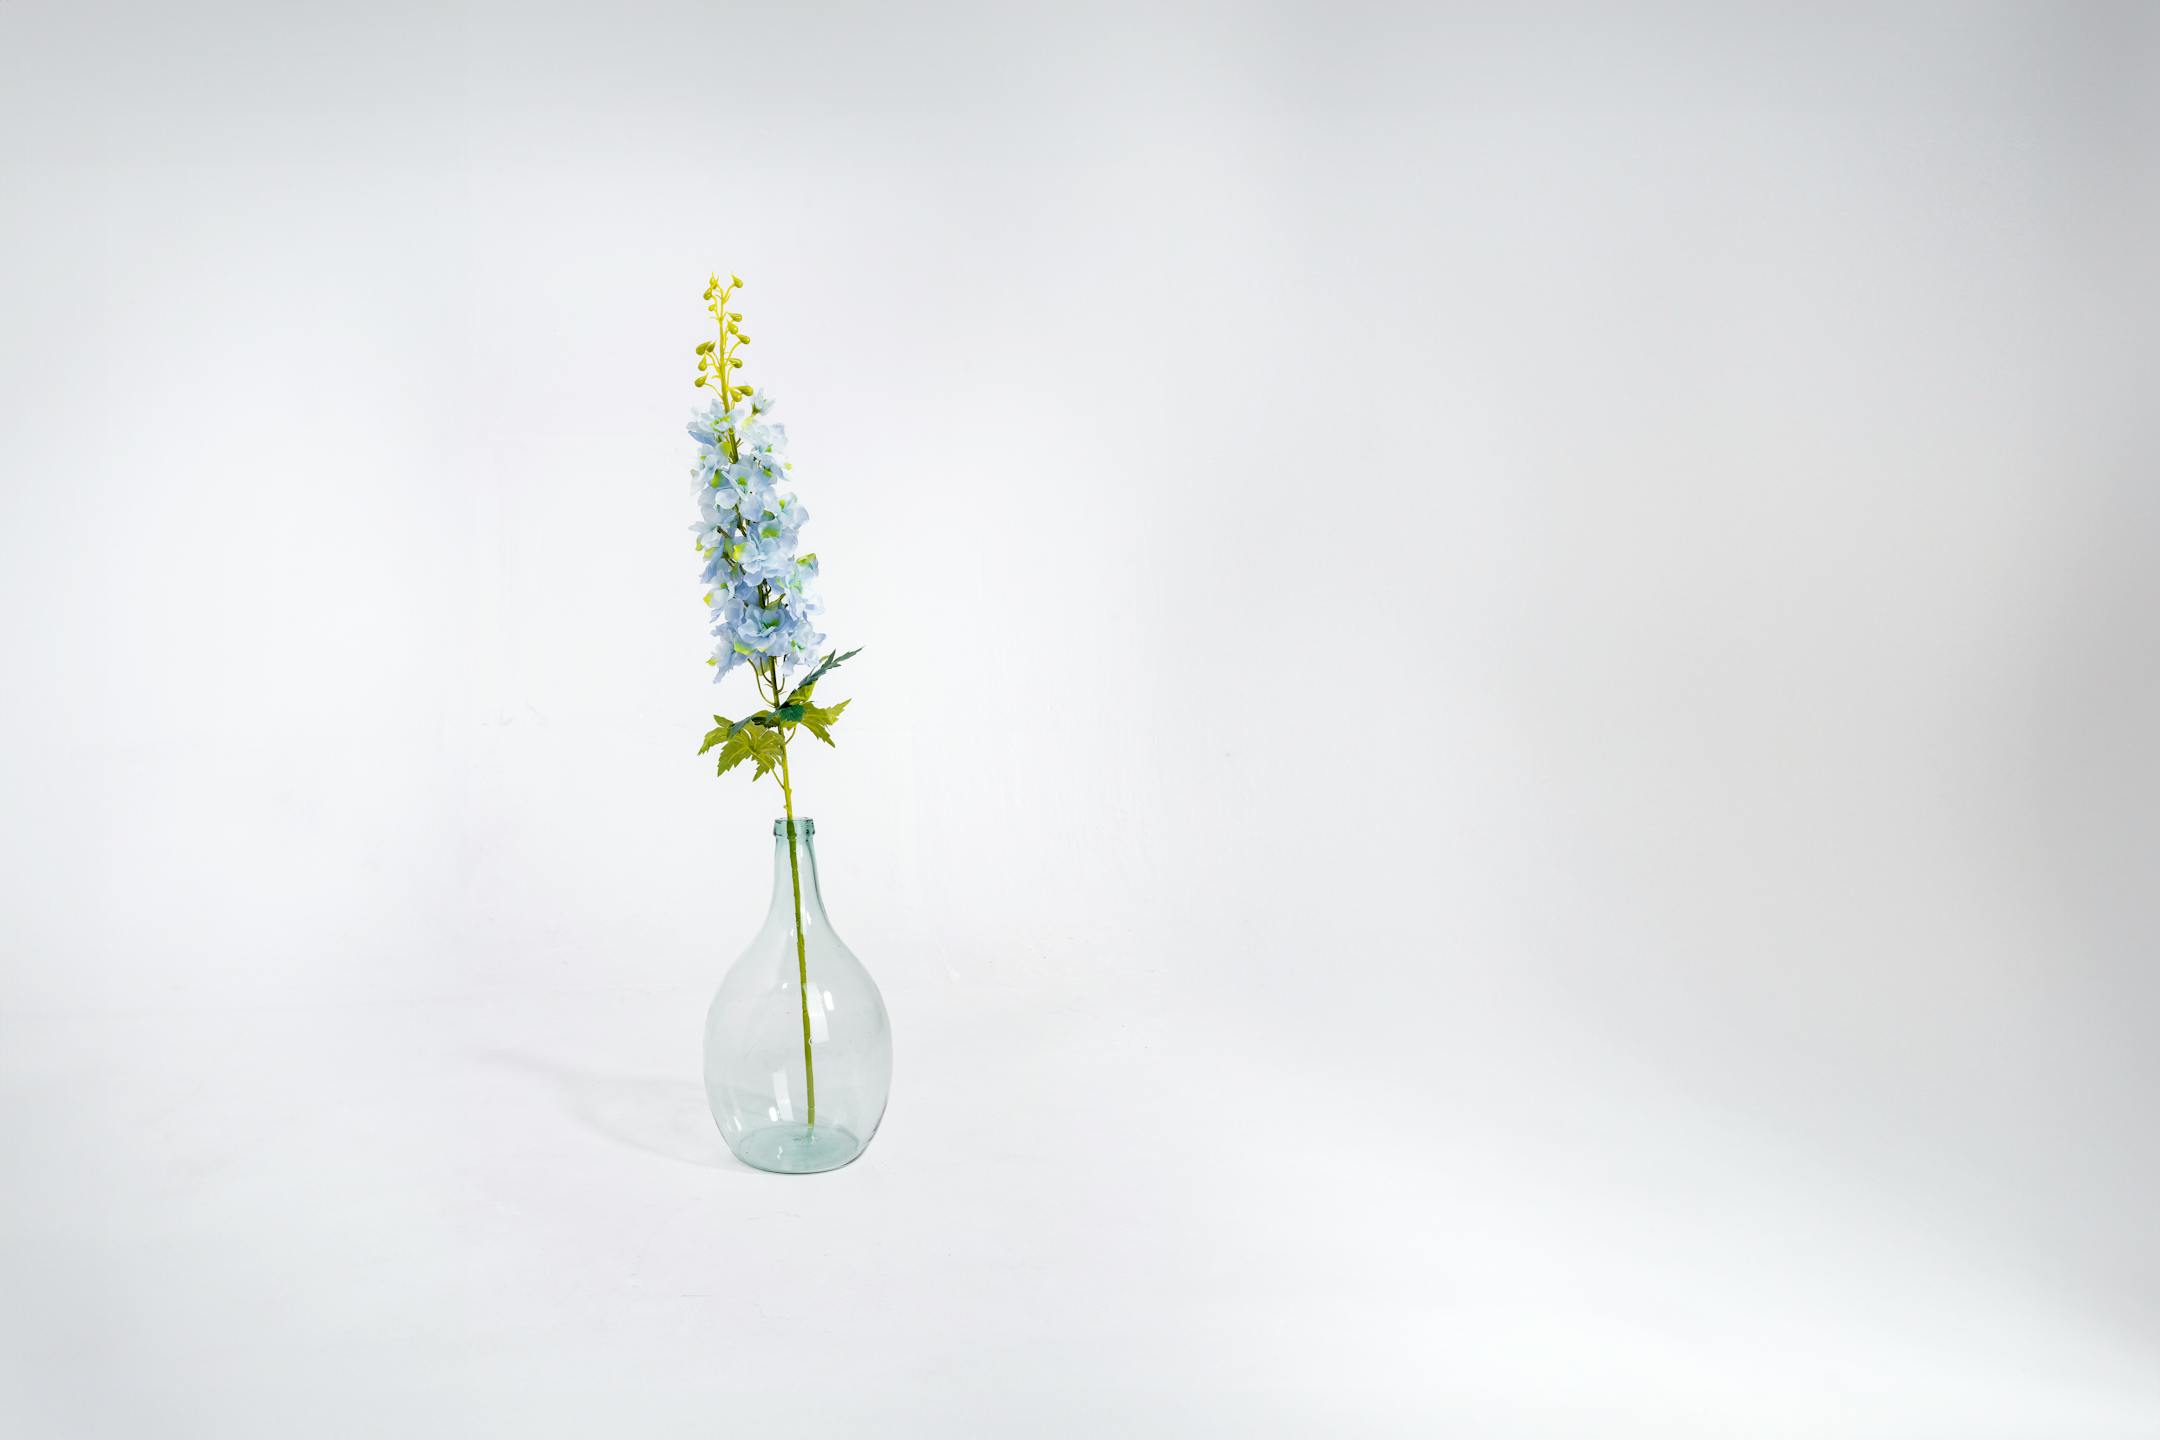 Blue artificial delphinium stem in glass vase